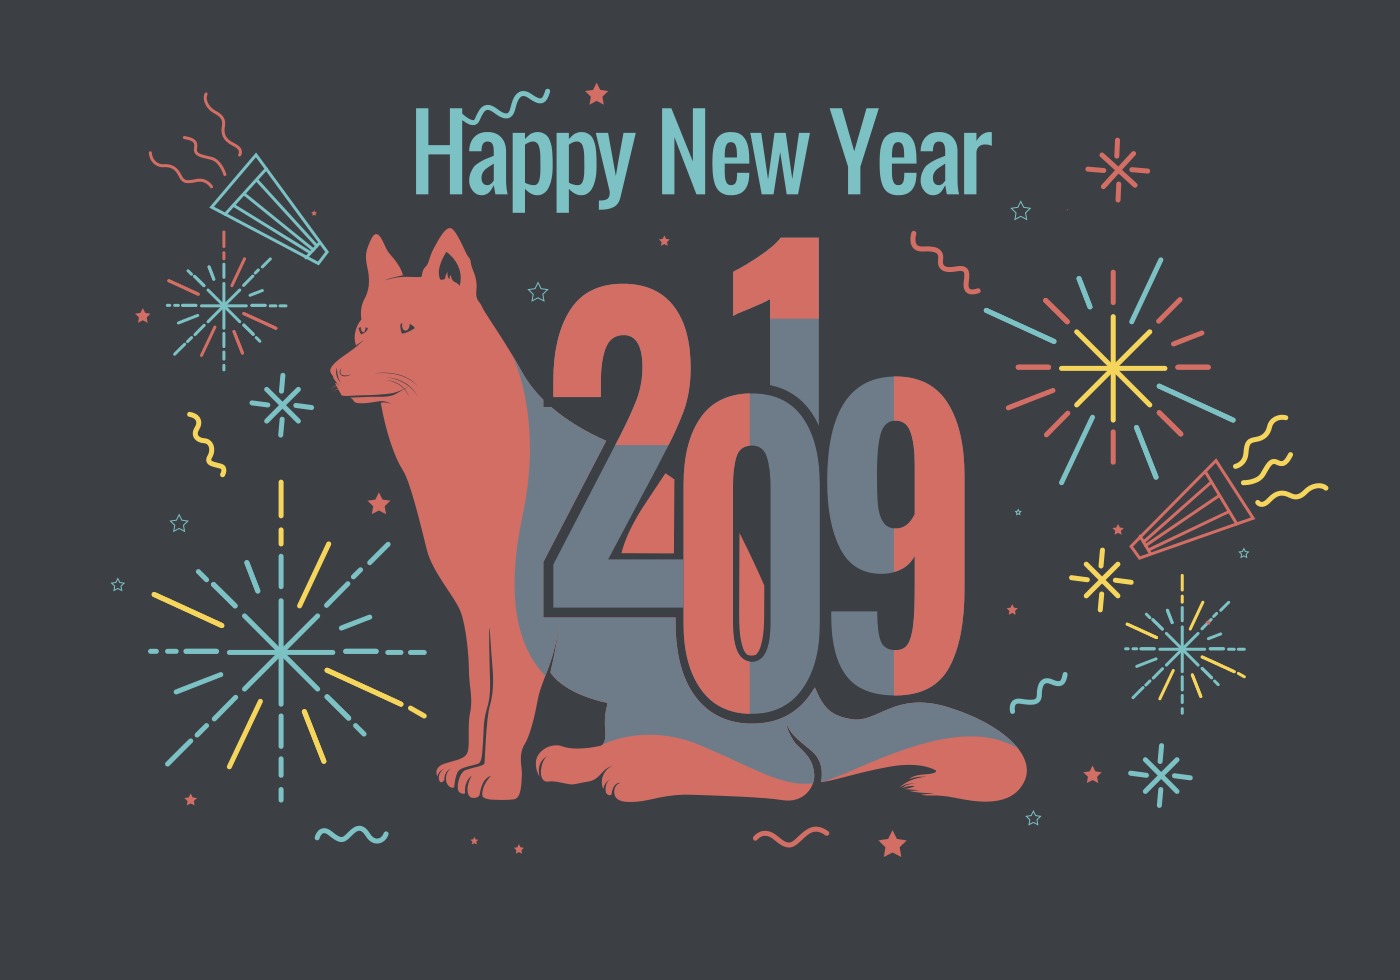  Happy  New  Year  2019  Vector Download  Free Vector Art 